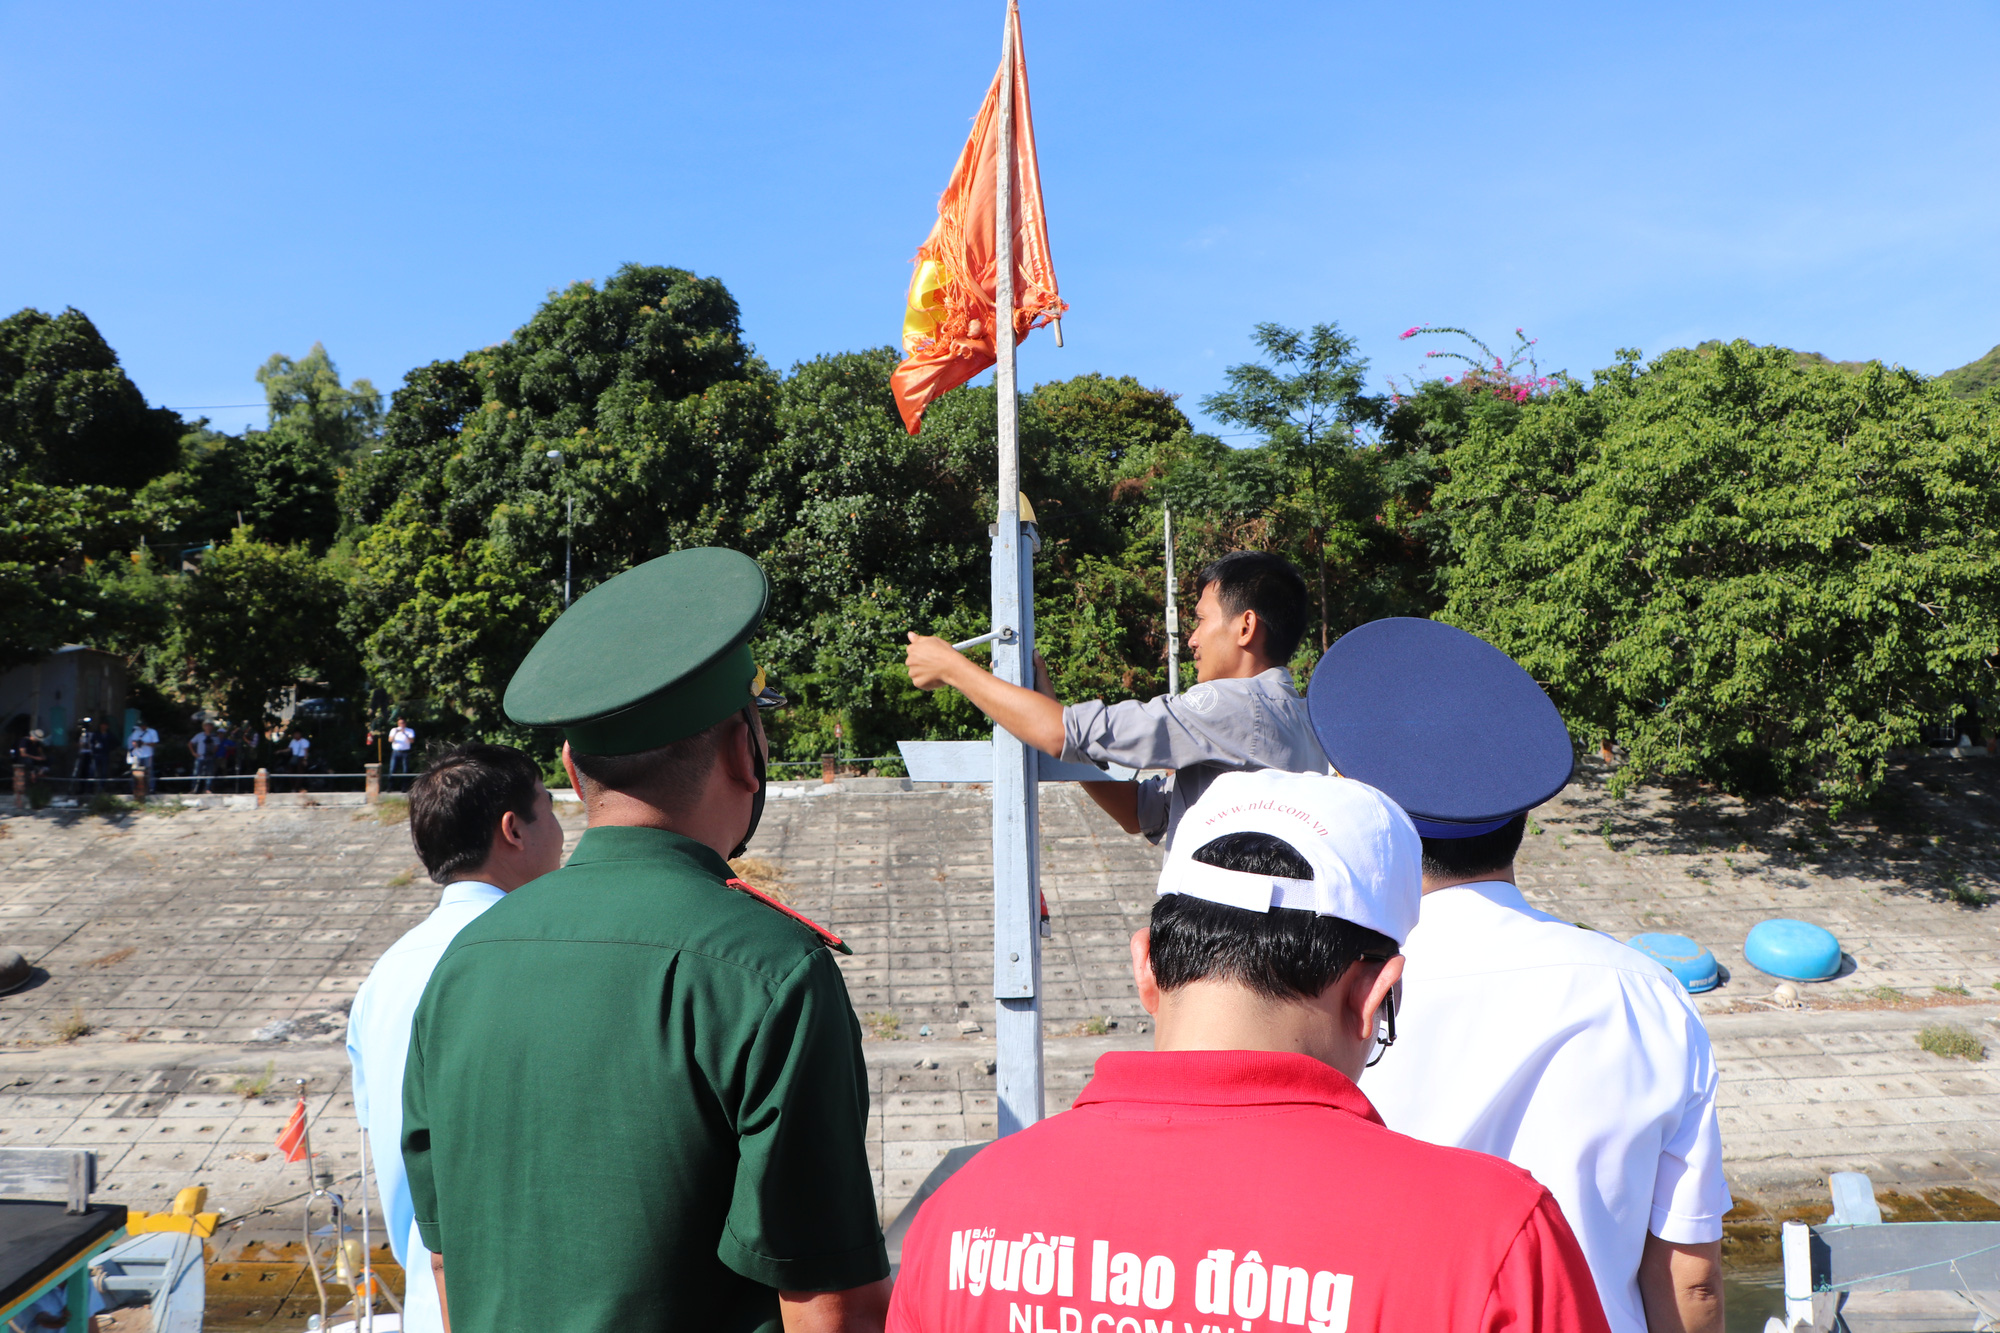 Sự kiện trao tặng lá cờ Tổ quốc cho ngư dân Ninh Thuận tại địa phương đã diễn ra thành công với sự tham gia của đông đảo người dân. Chúng ta cùng xem những hình ảnh đầy tình cảm và ý nghĩa này để cảm nhận thêm niềm vinh dự và trách nhiệm của mỗi người dân Việt Nam.